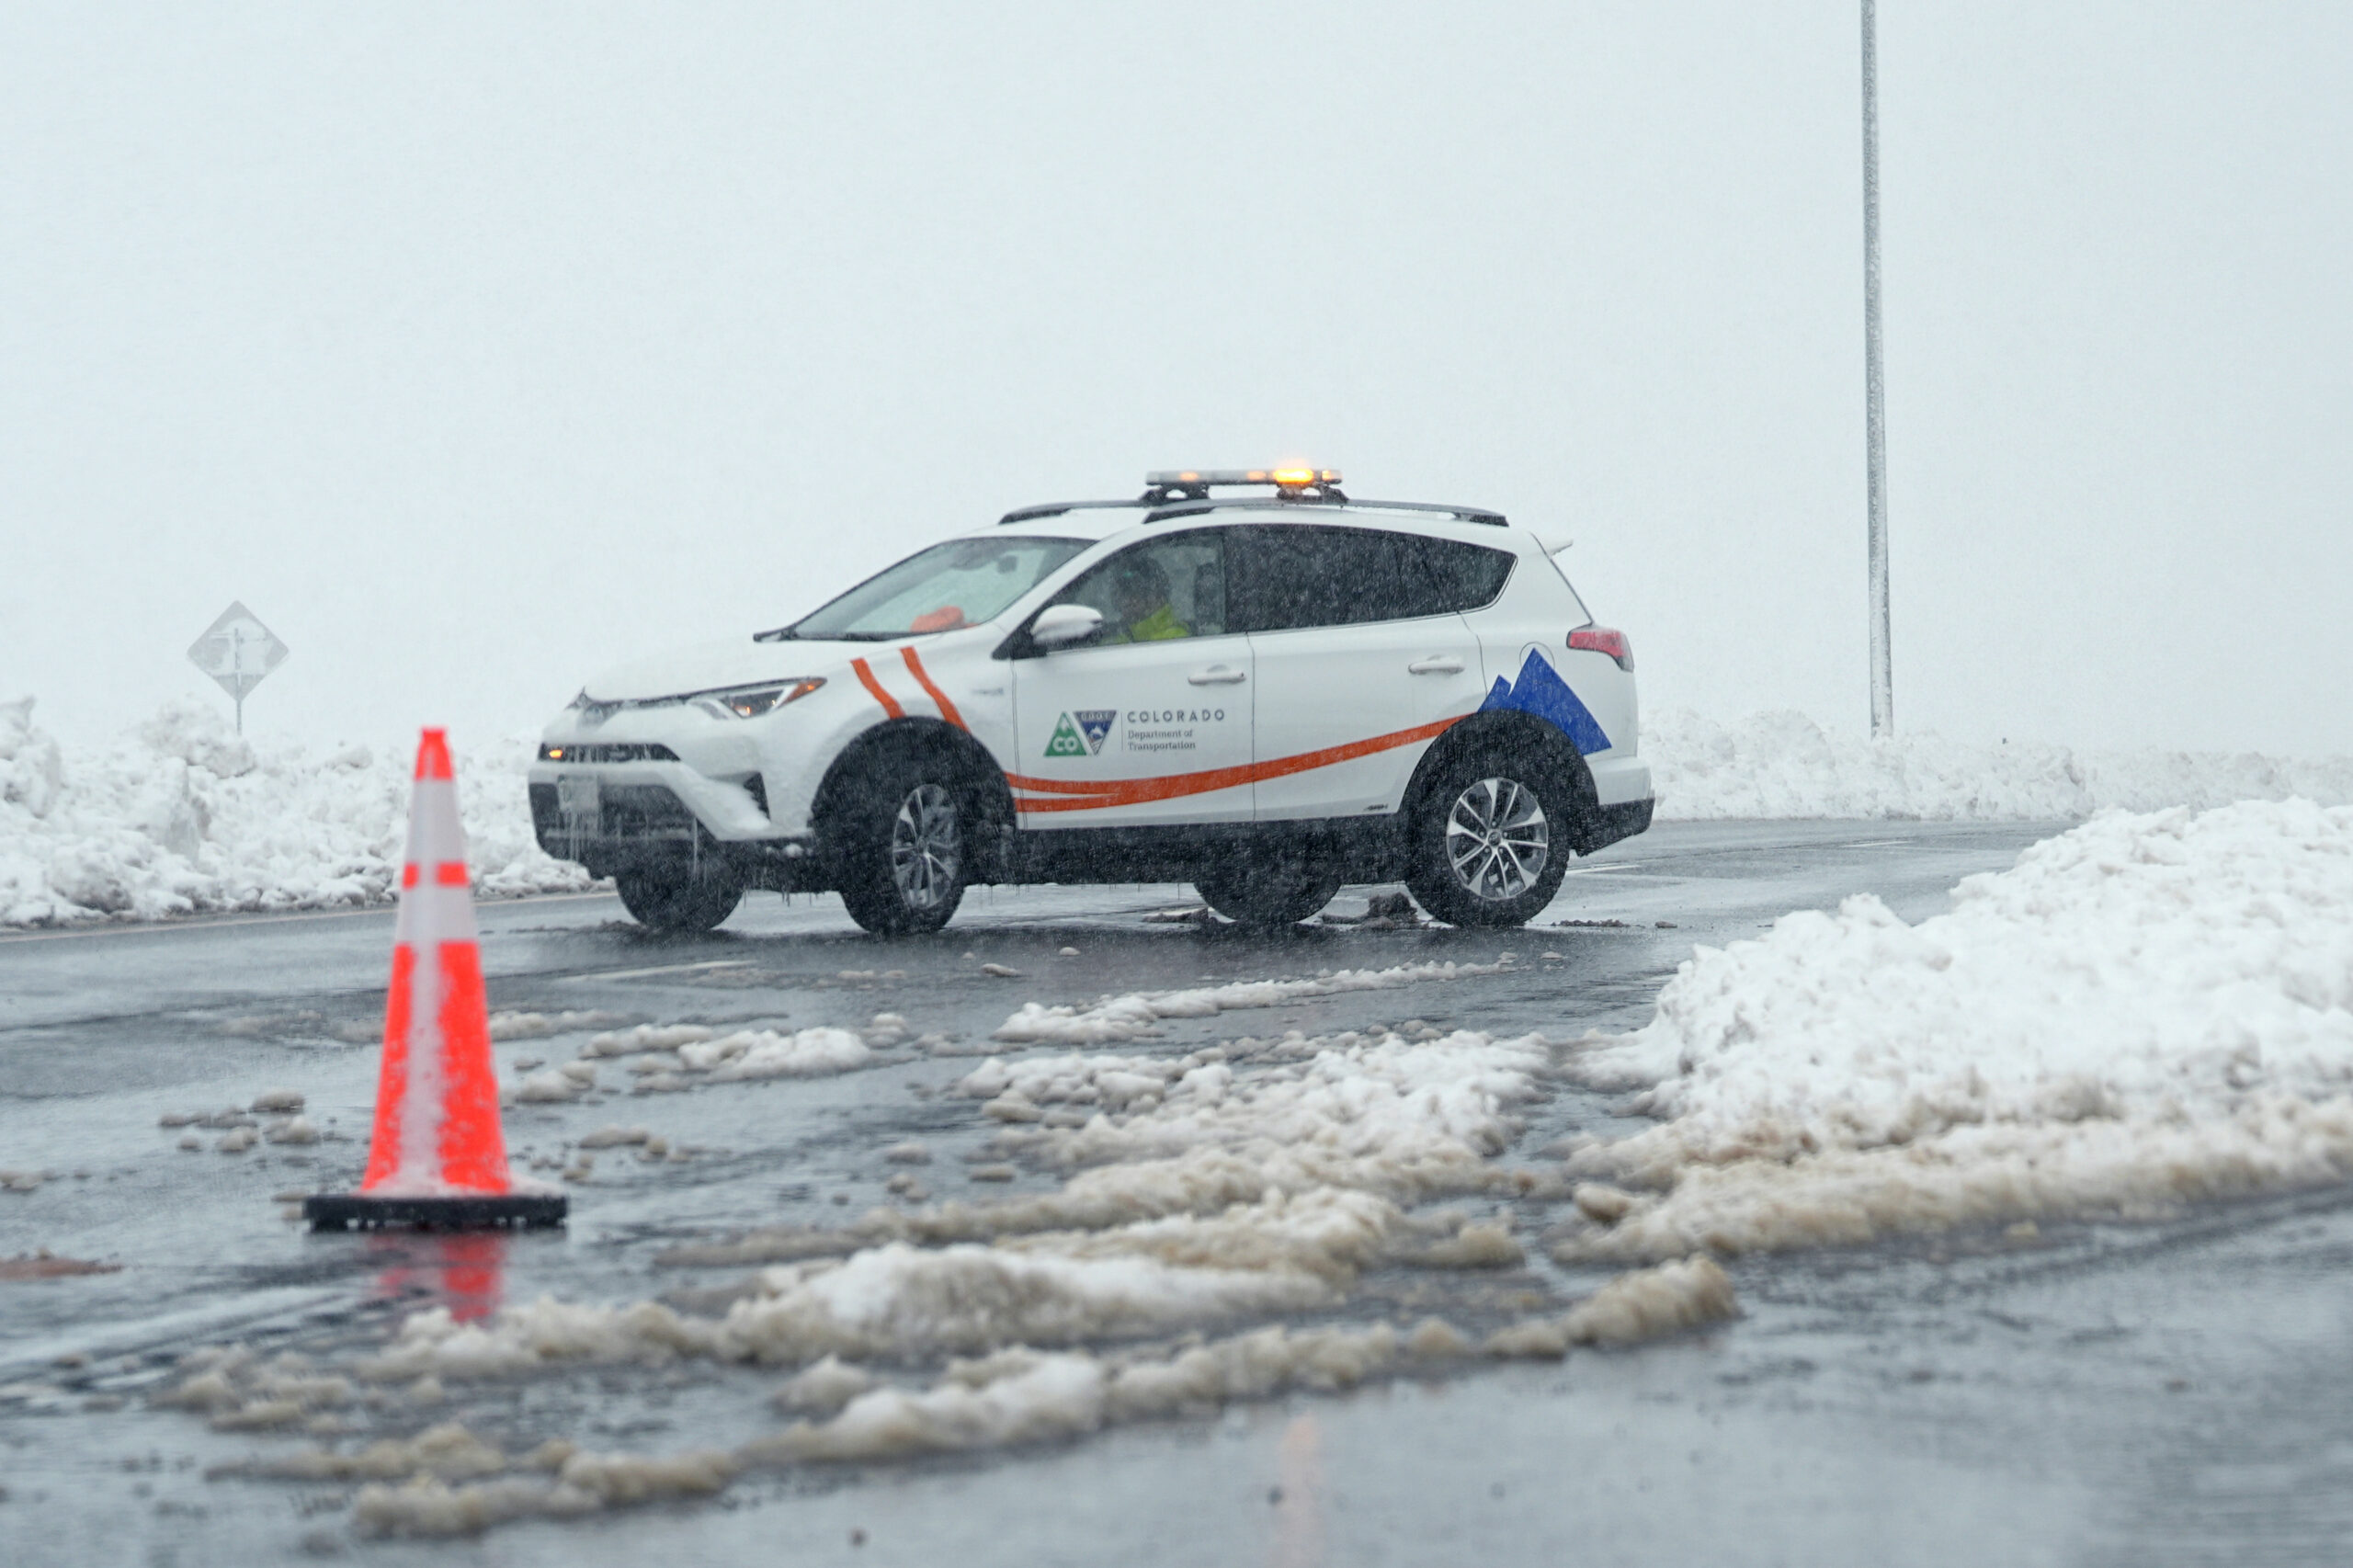 Σουηδία: Κυκλοφοριακό χάος εξαιτίας σφοδρής χιονόπτωσης – Πολίτες εγκλωβίστηκαν για περισσότερες από 10 ώρες στα αυτοκίνητά τους